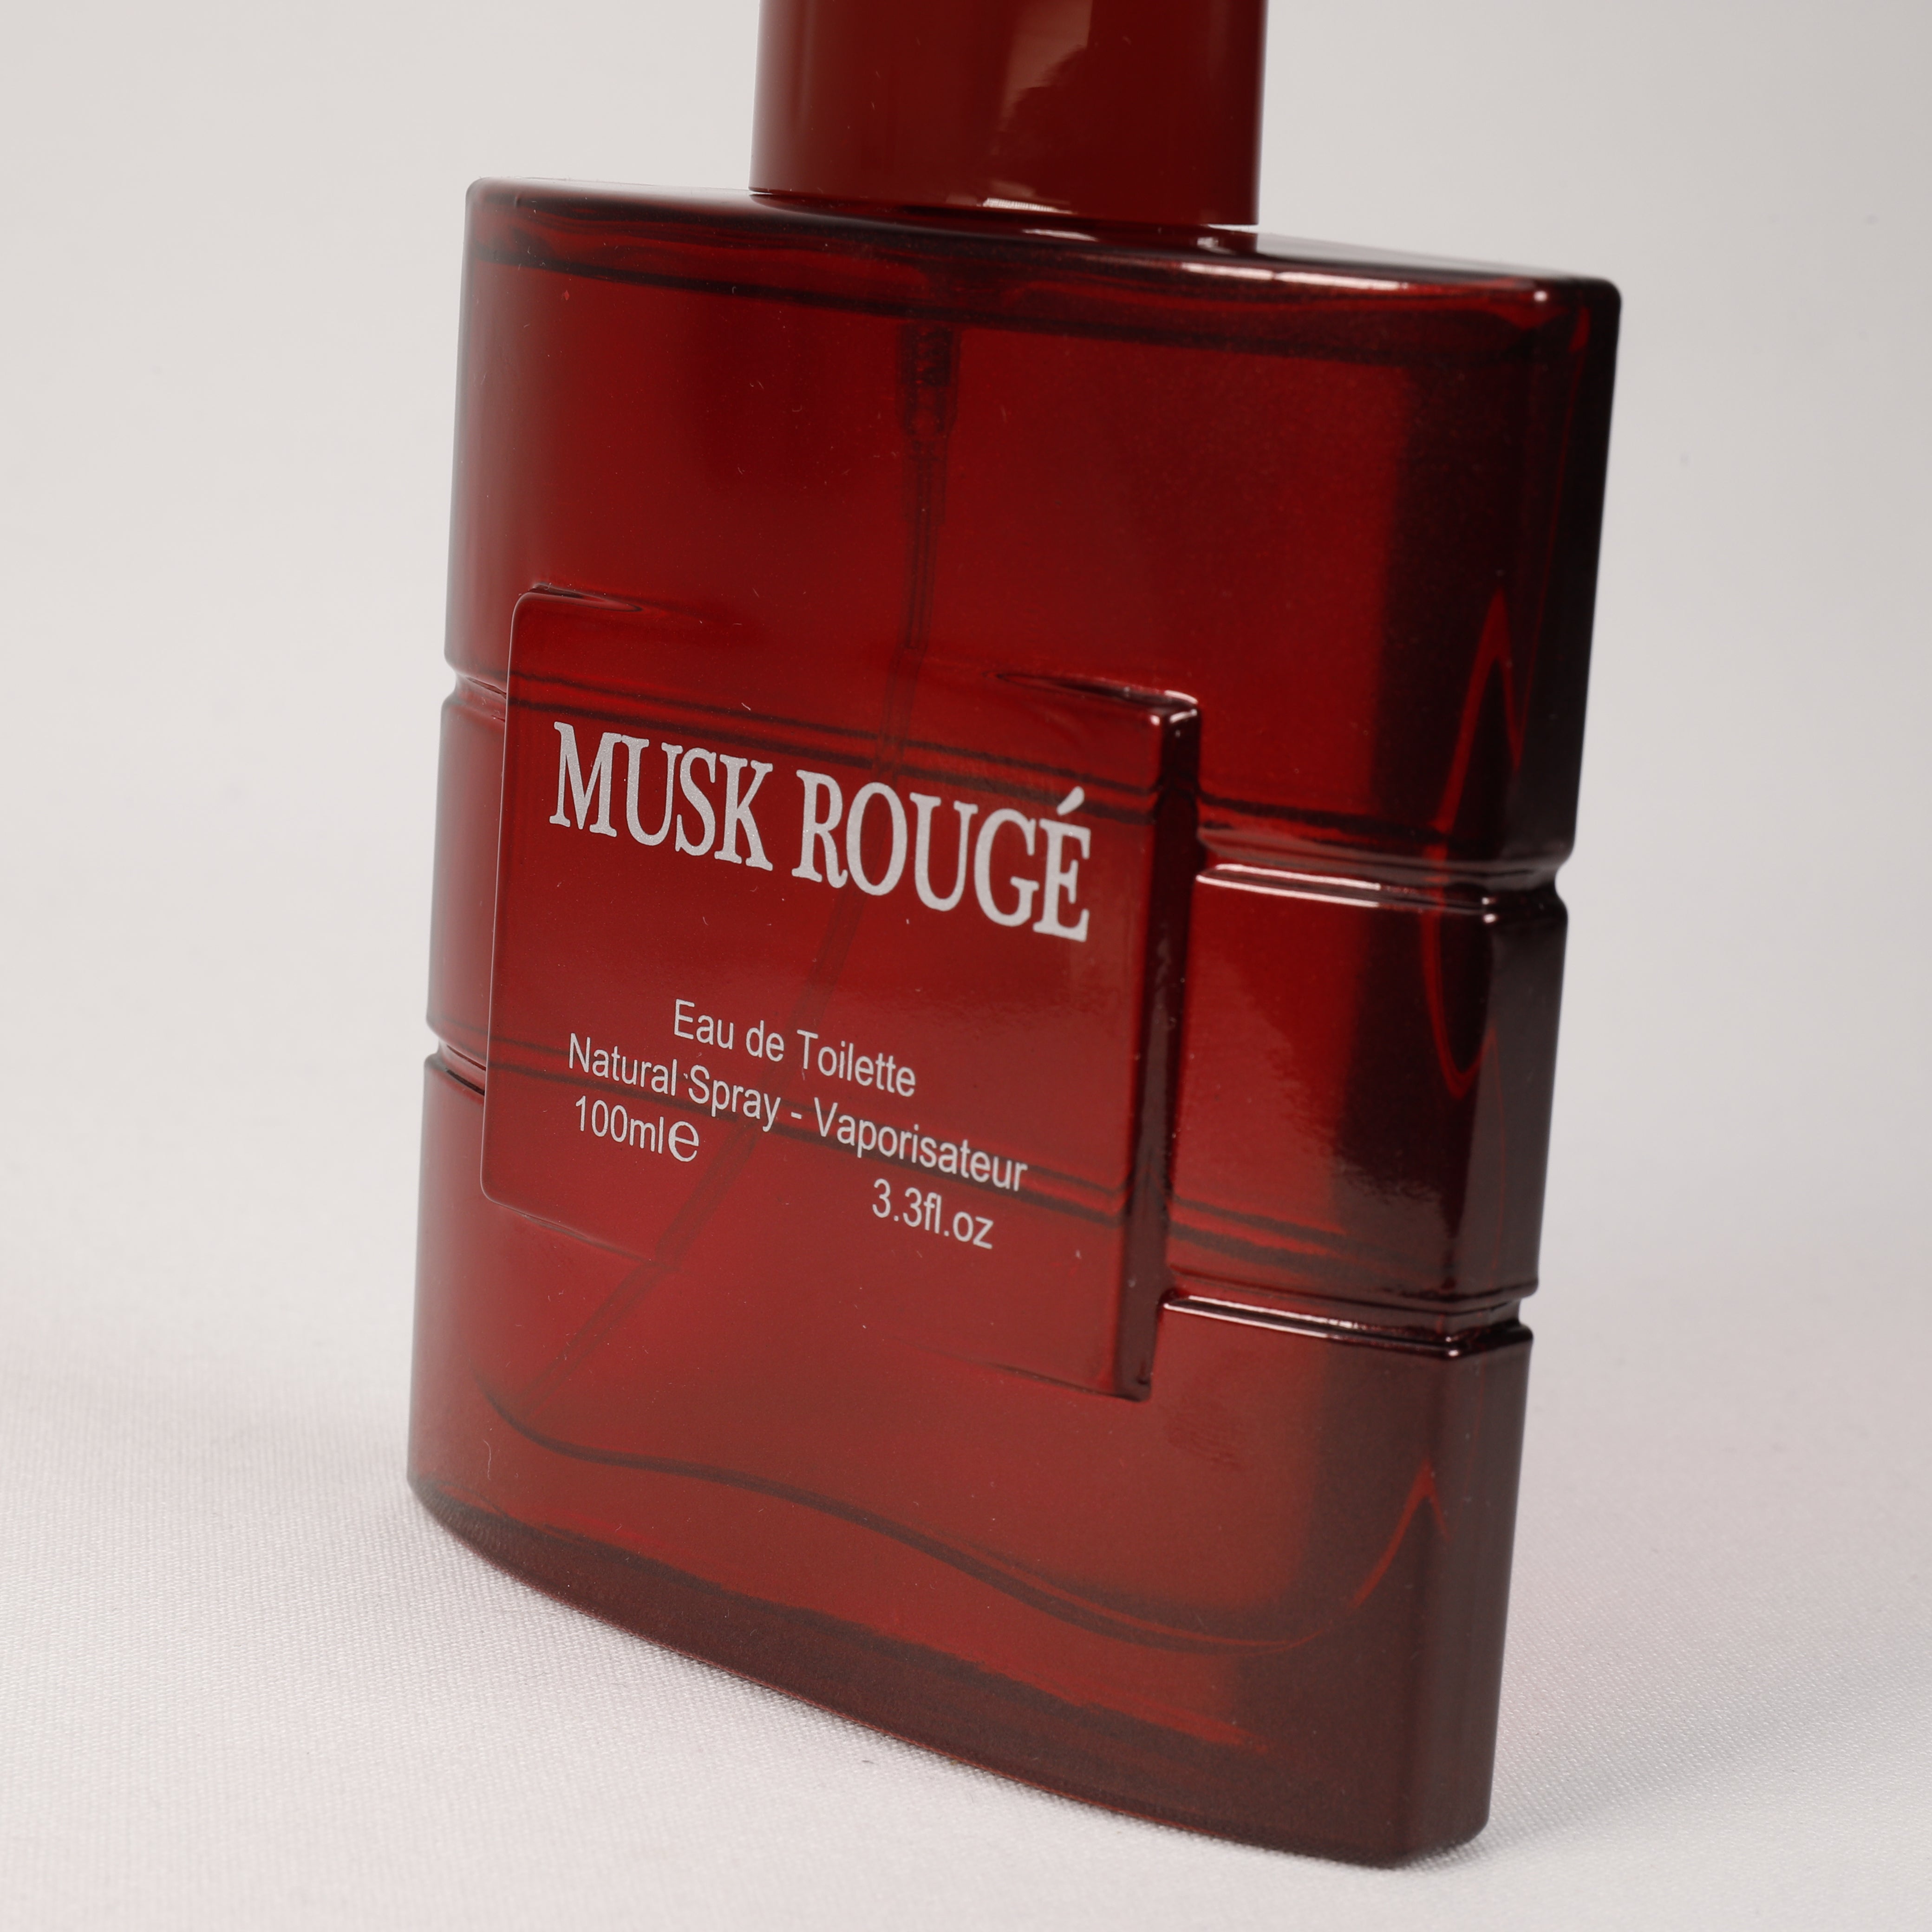 Musk Rouge, Roter Moschus, Vaporizer mit natürlichem Spray, 100 ml Duft, TOP Parfüm Musk, NEU OVP